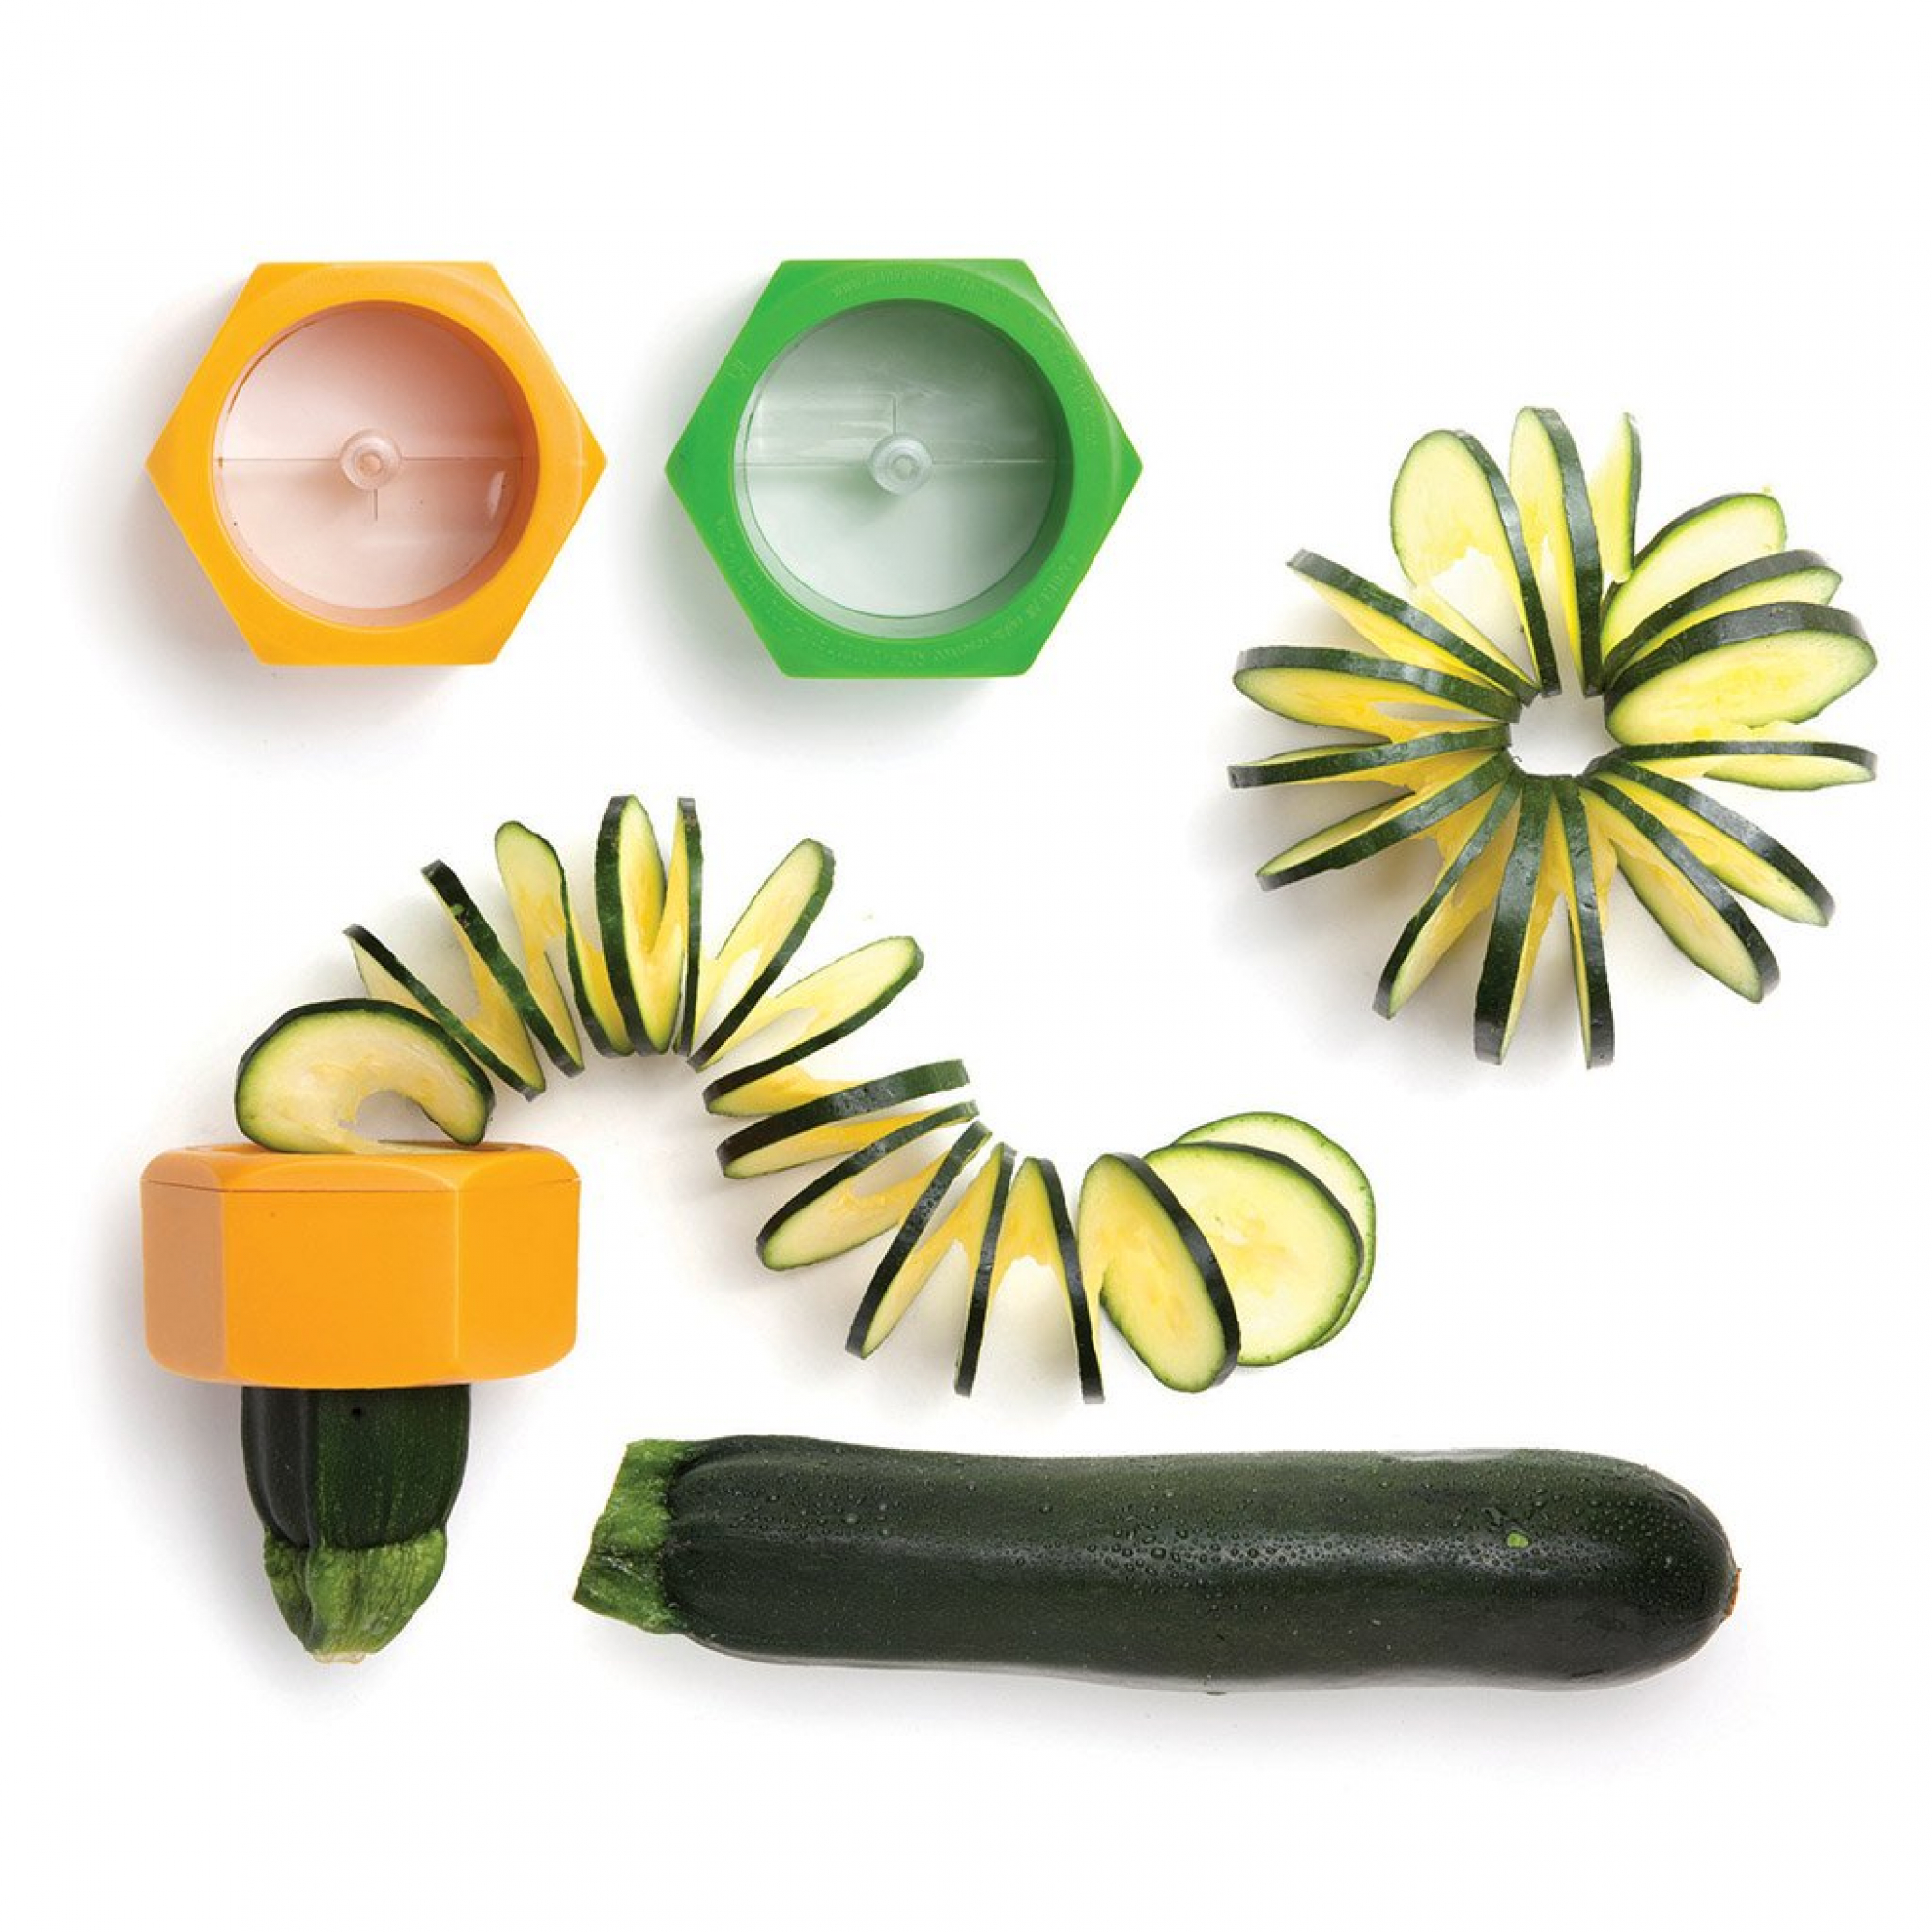 Фигурные ножи для овощей купить. Спиральный слайсер. Нож для фигурной нарезки овощей. Спиральный нож для овощей. Прибор для фигурной нарезки овощей.